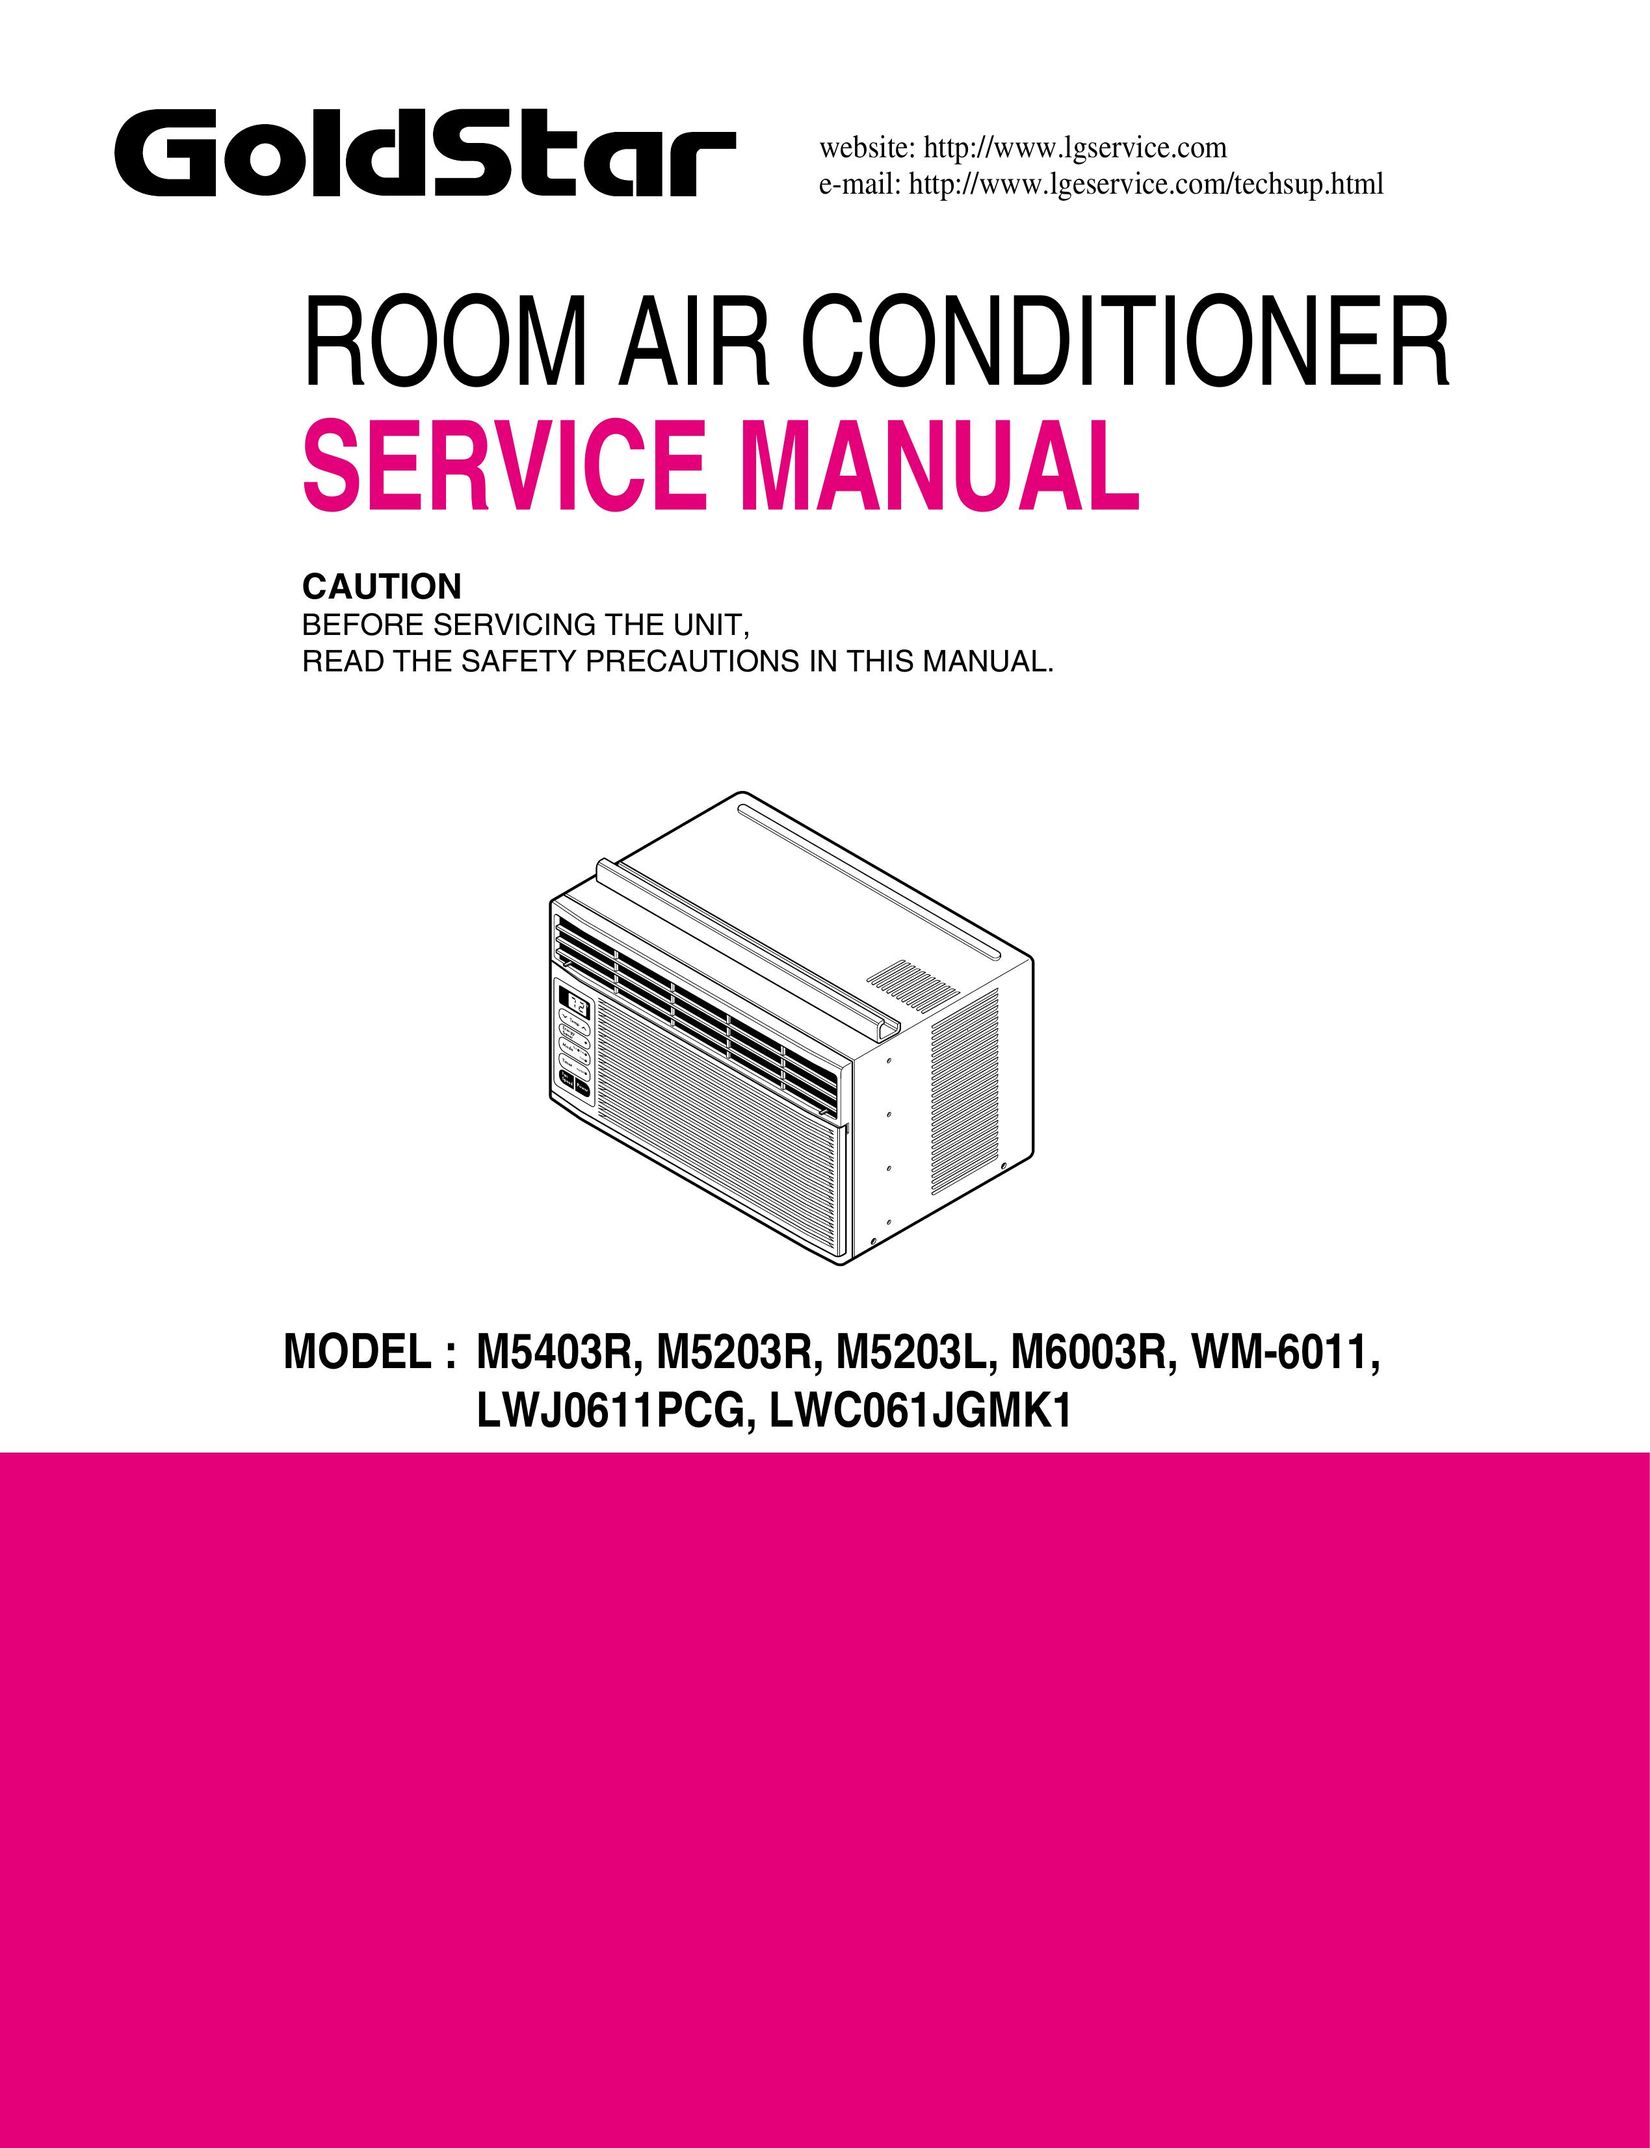 Goldstar LWC061JGMK1 Air Conditioner User Manual